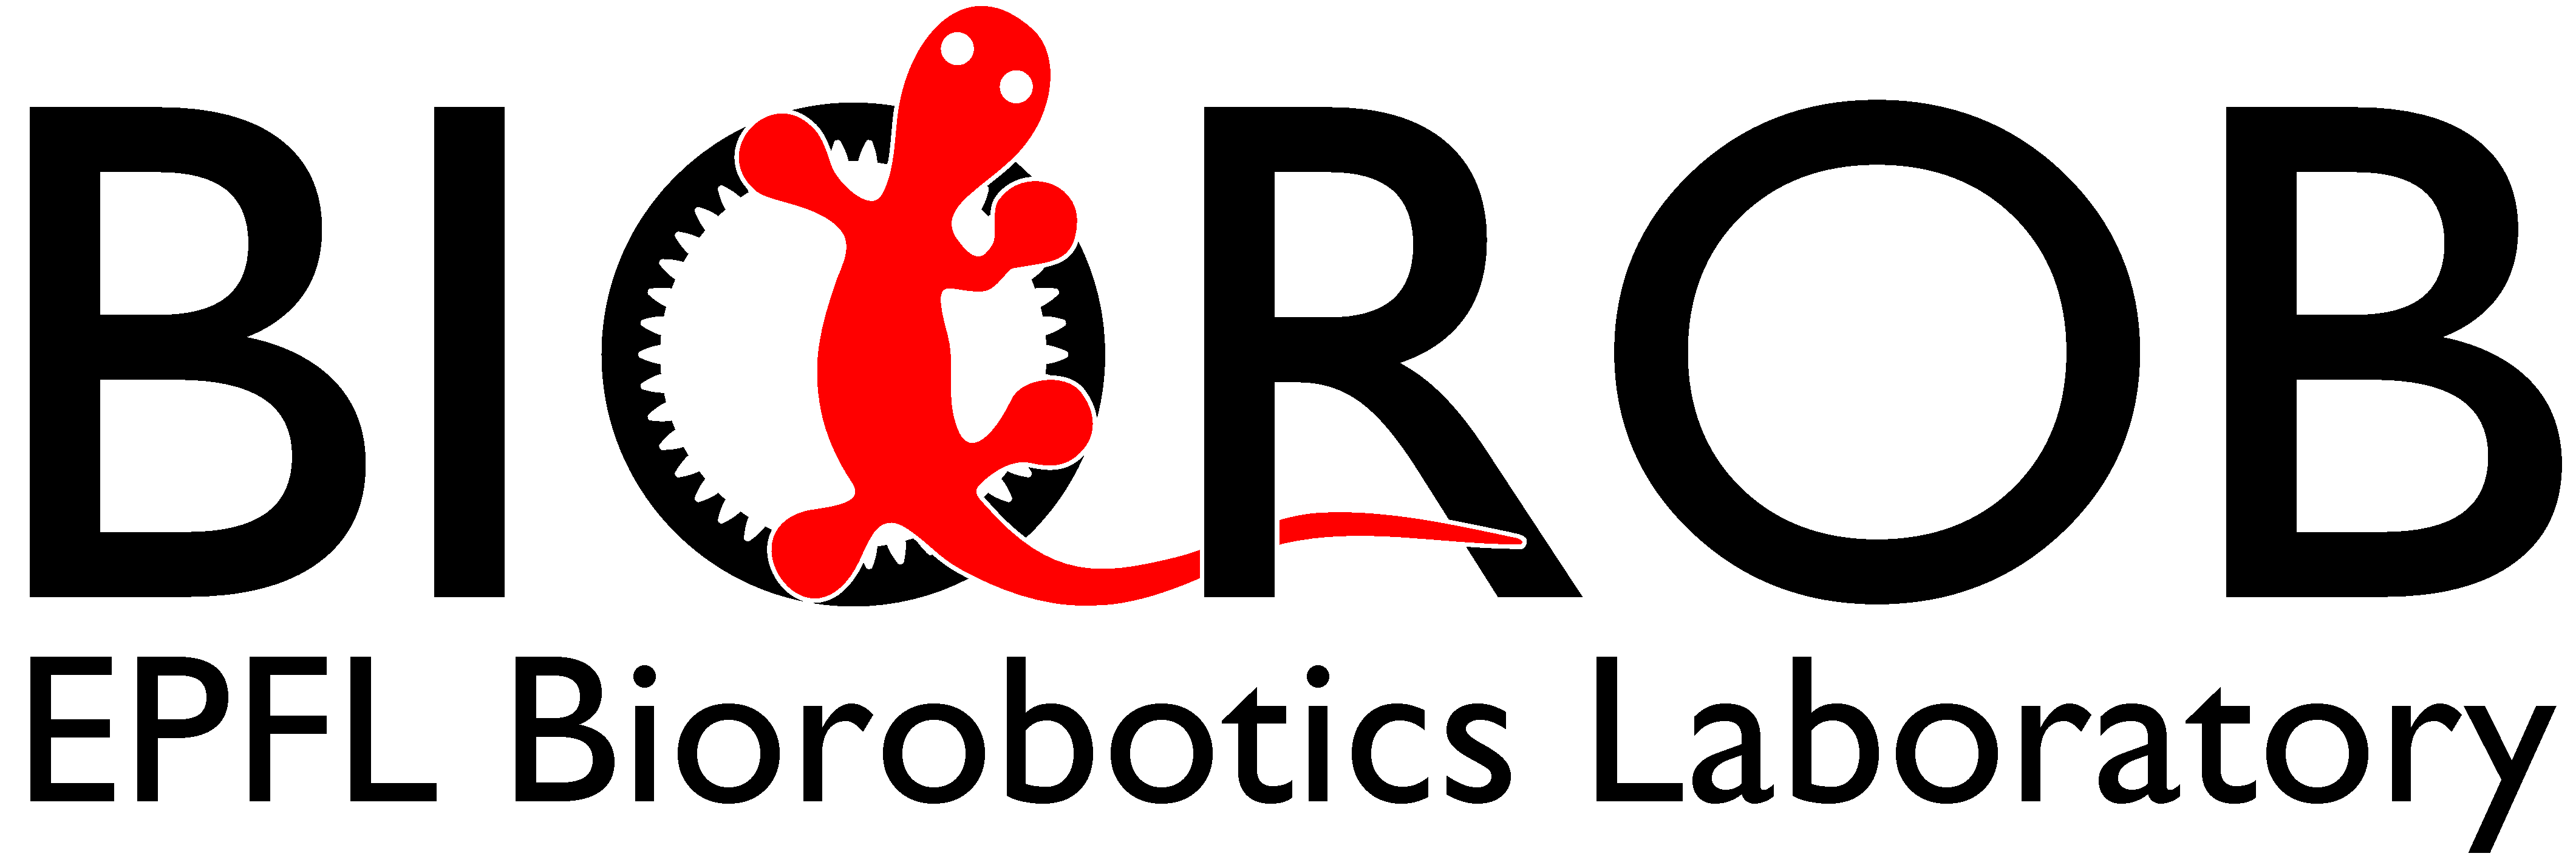 Image BioRobotics Lab